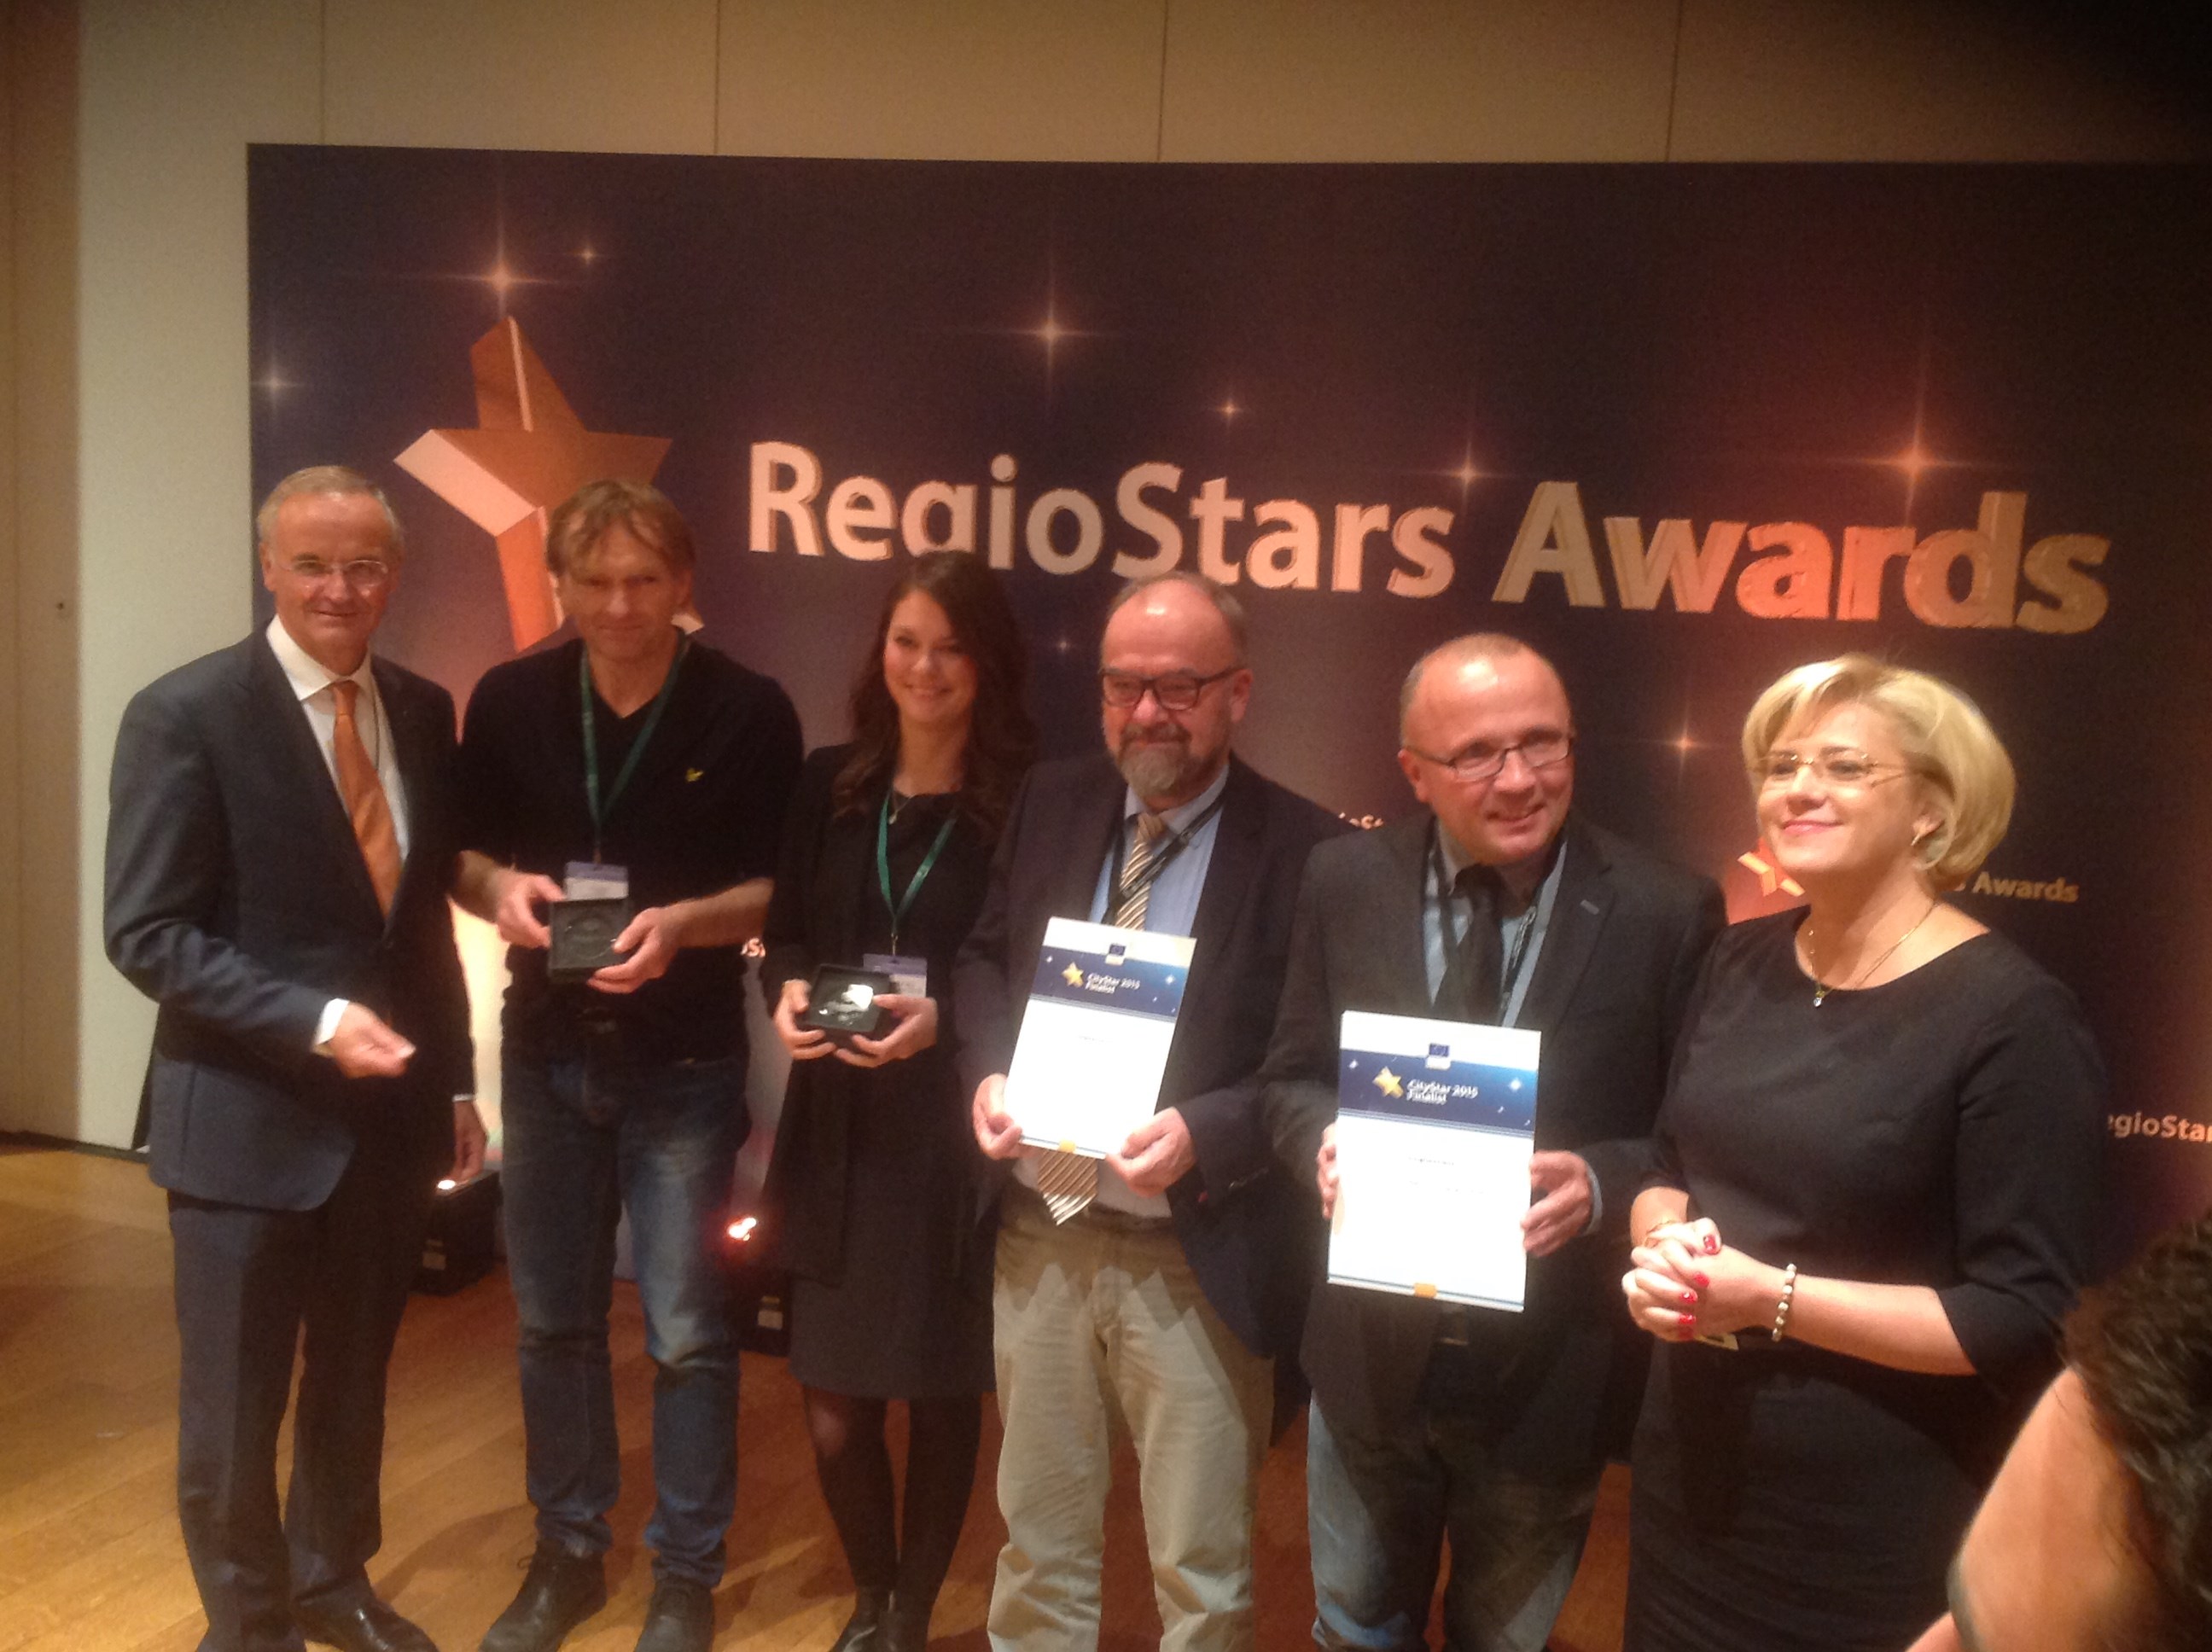 Energibyen Skive modtager RegioStars Awarden i Bruxelles for en placering som nummer to med projektet 'Implement' i kategorien 'Citystar'. 